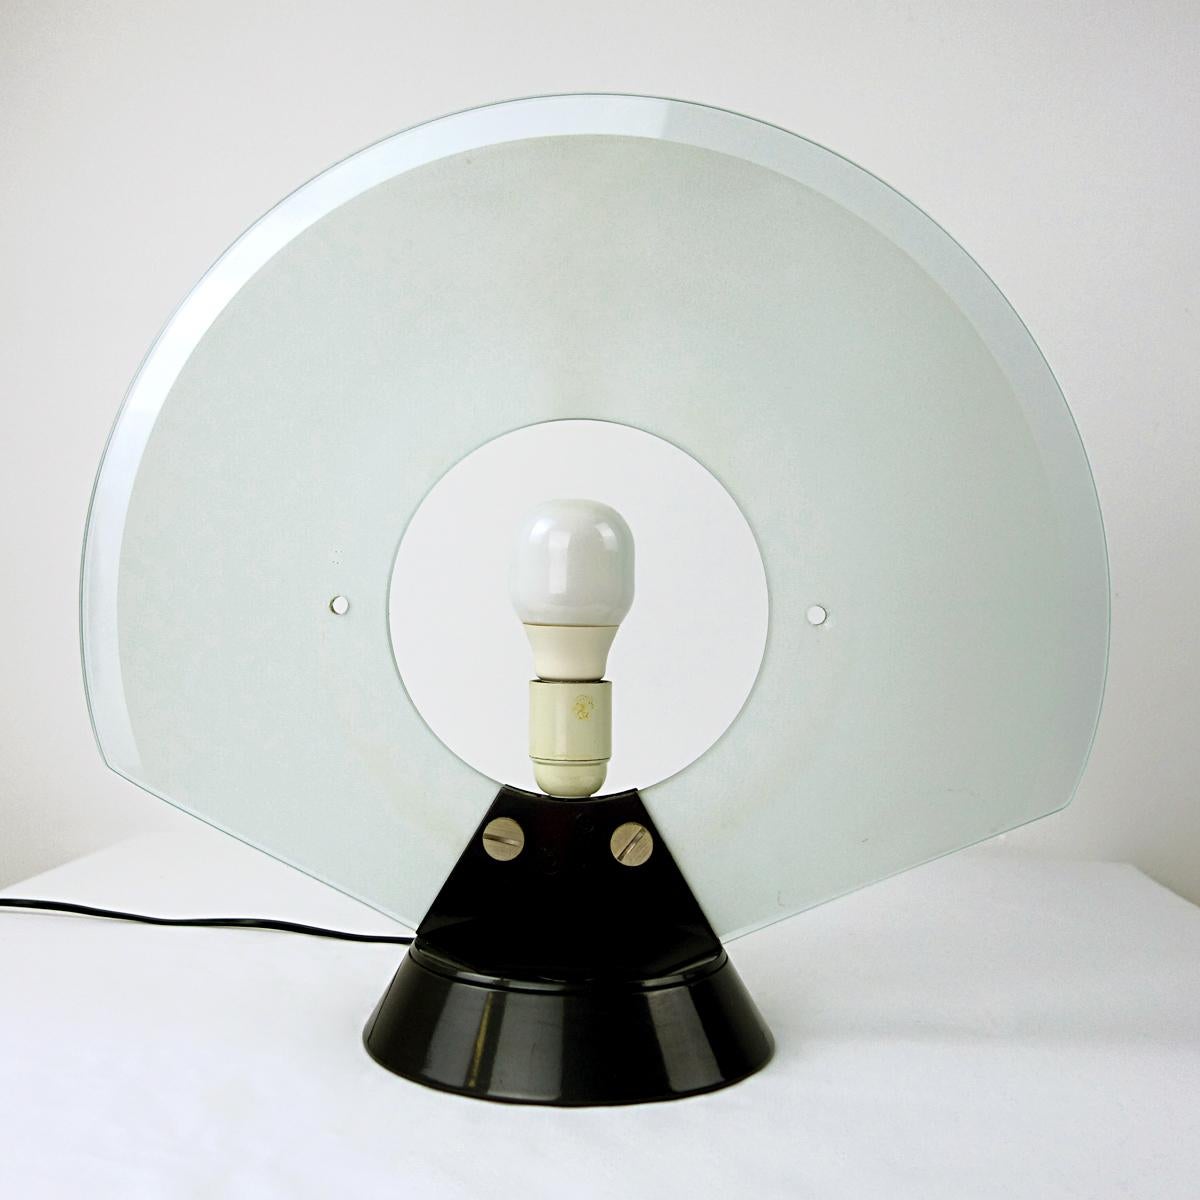 Postmodern Table Lamp Tikkal by Pier Giuseppe Ramella for Arteluce 1